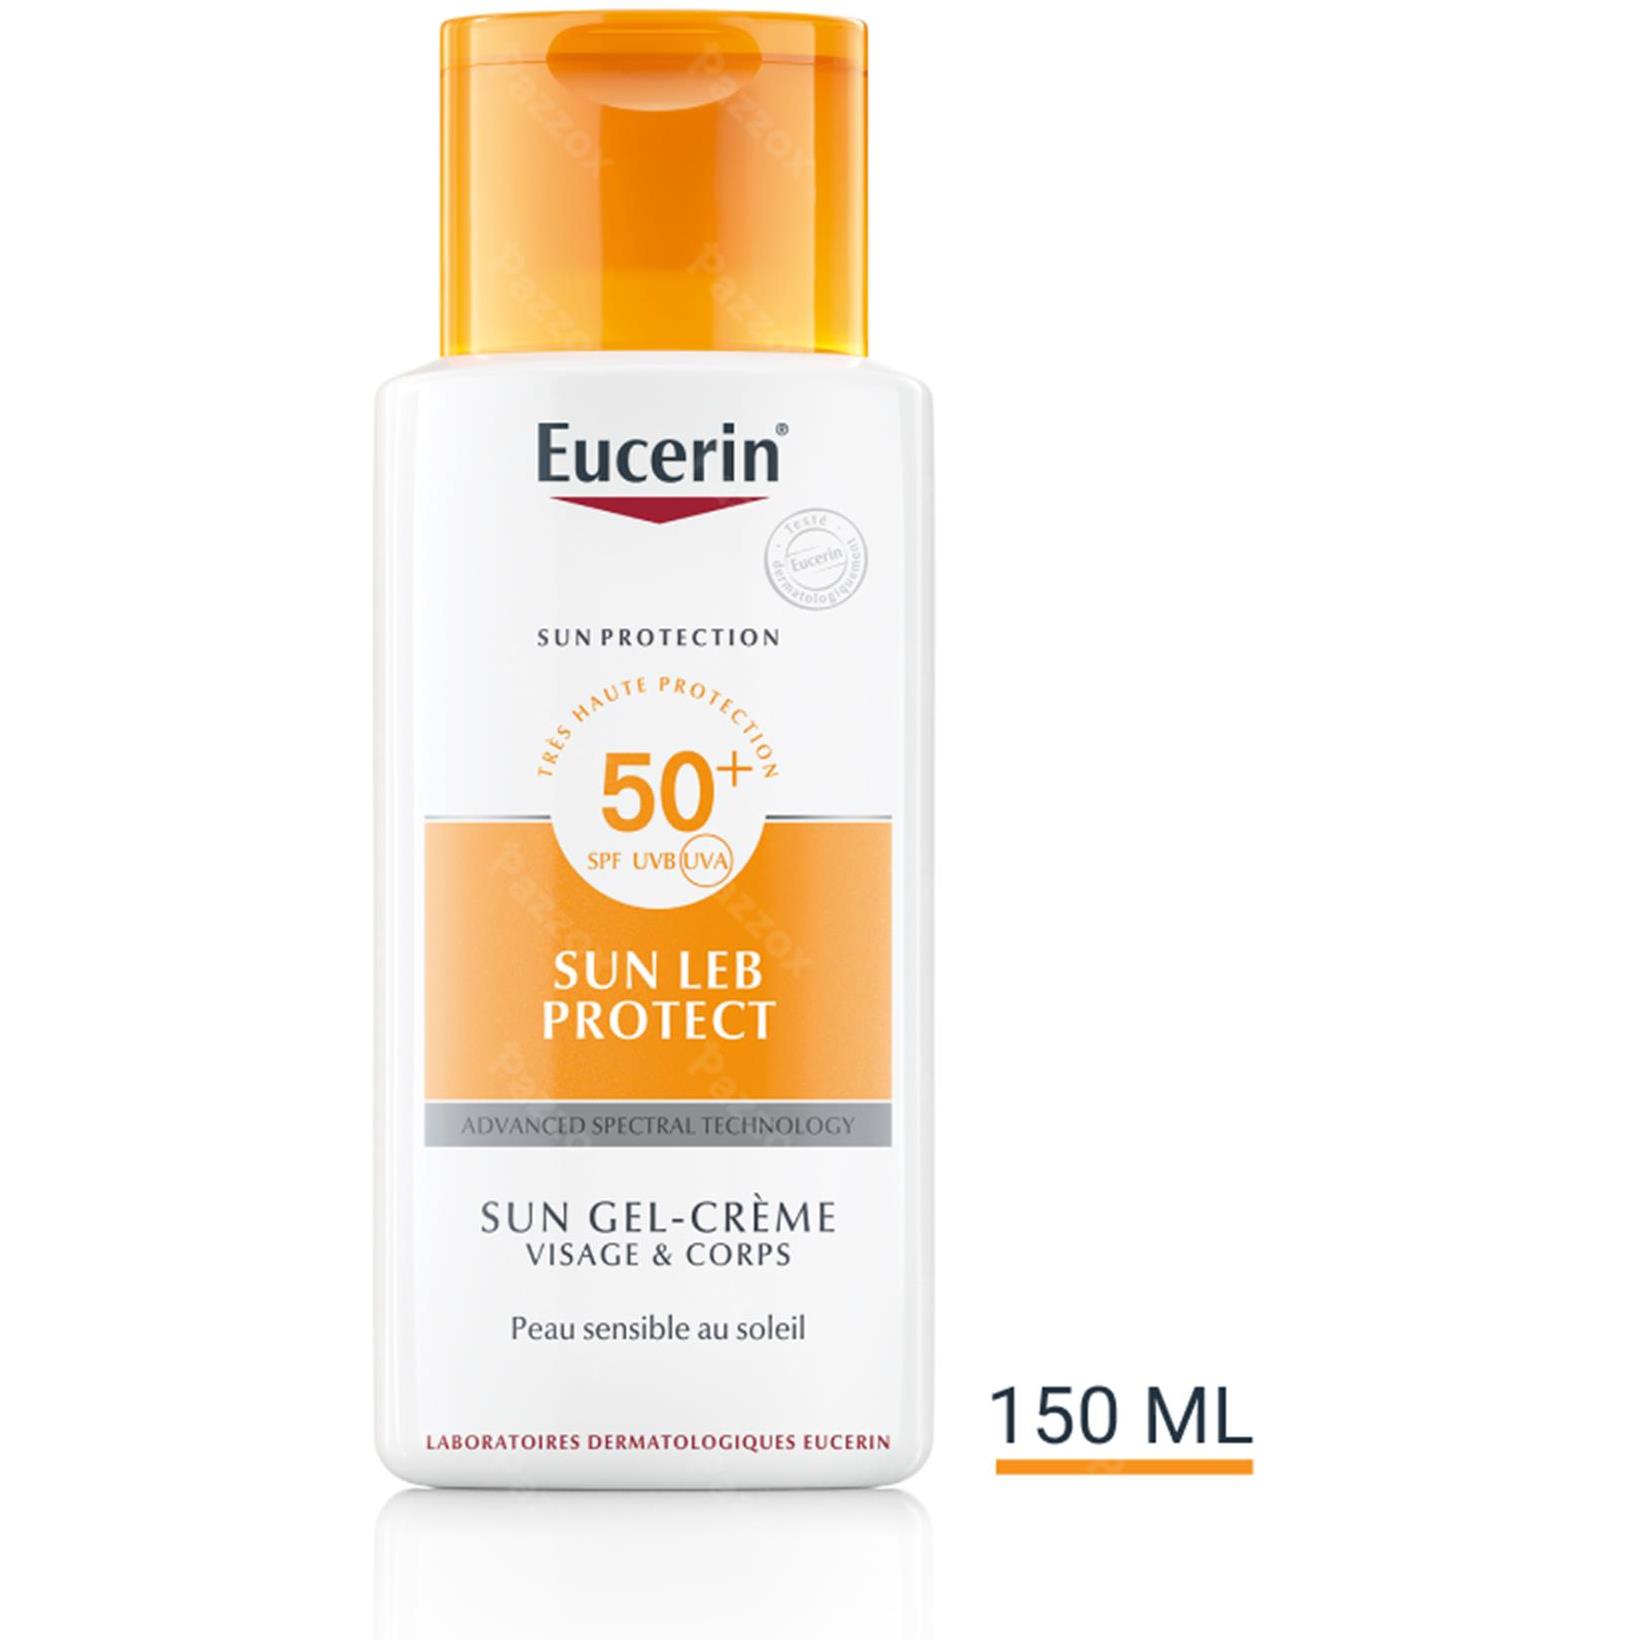 EUCERIN - GEL CREME [SUN 50+ PLE PROTECT] [150 ML]